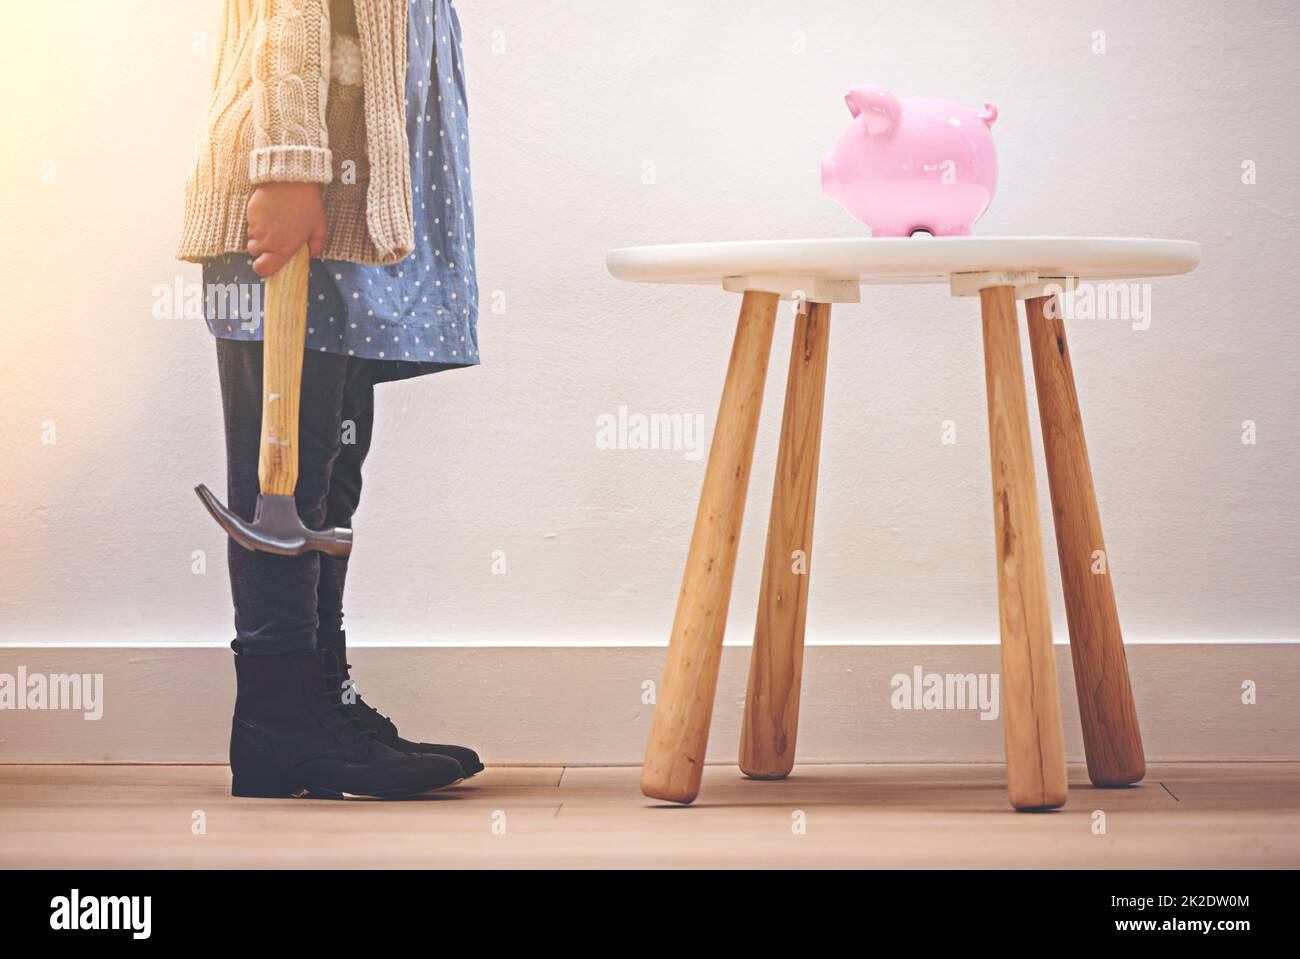 Einen frühen Start in ihre Ersparnisse zu bekommen. Ein kleines Mädchen, das mit einem Hammer neben ihrem Sparschwein steht. Stockfoto